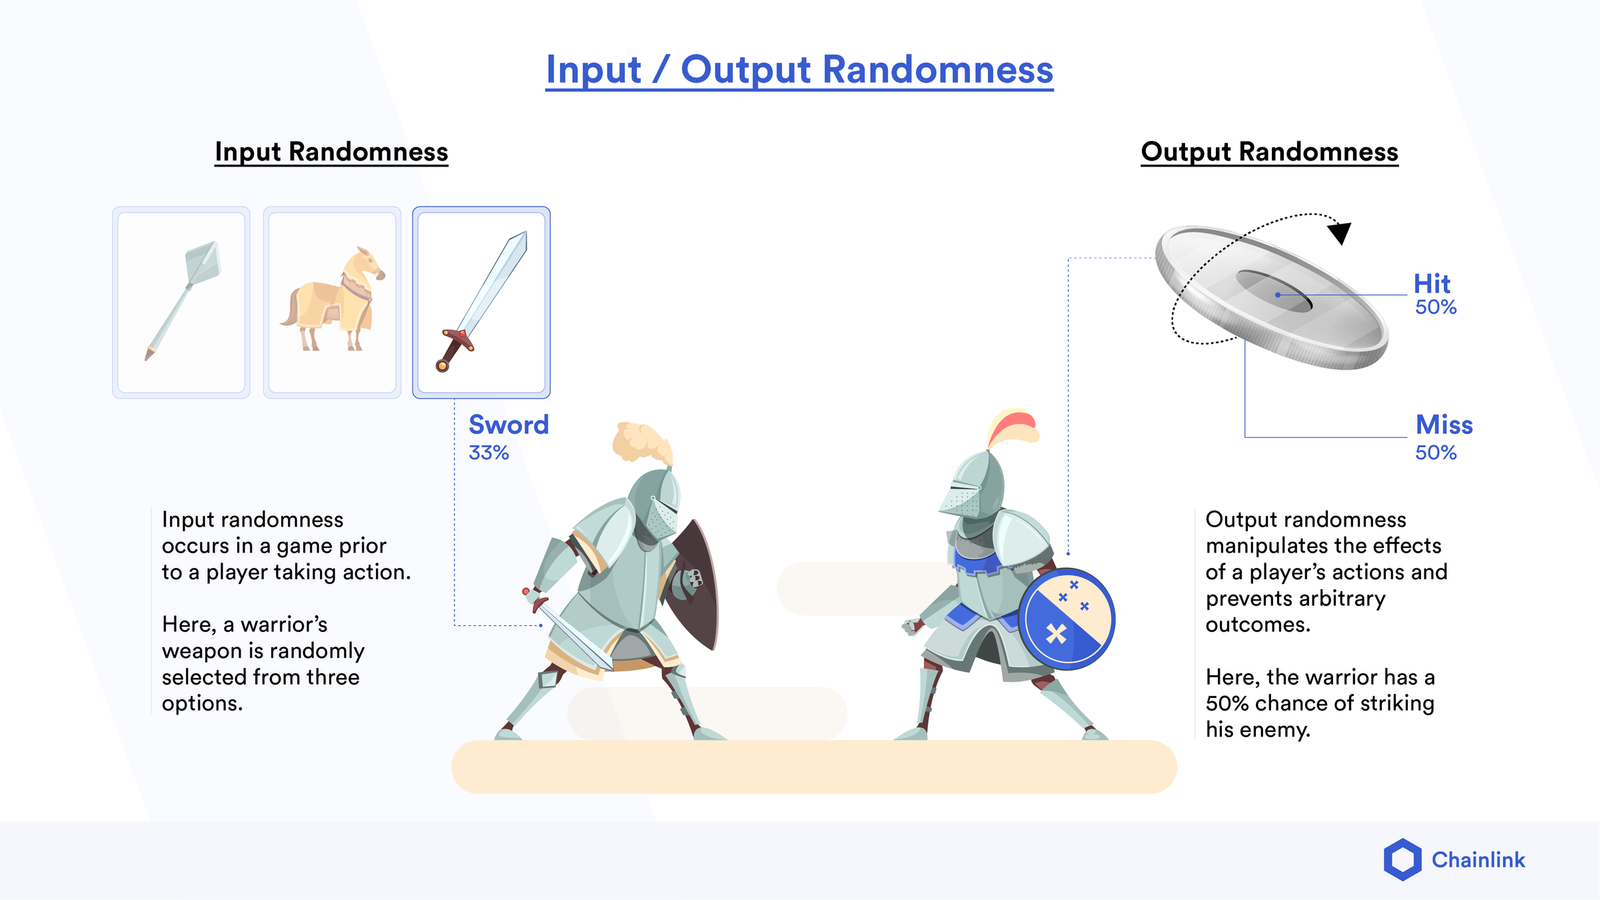 Input/Output Randomness